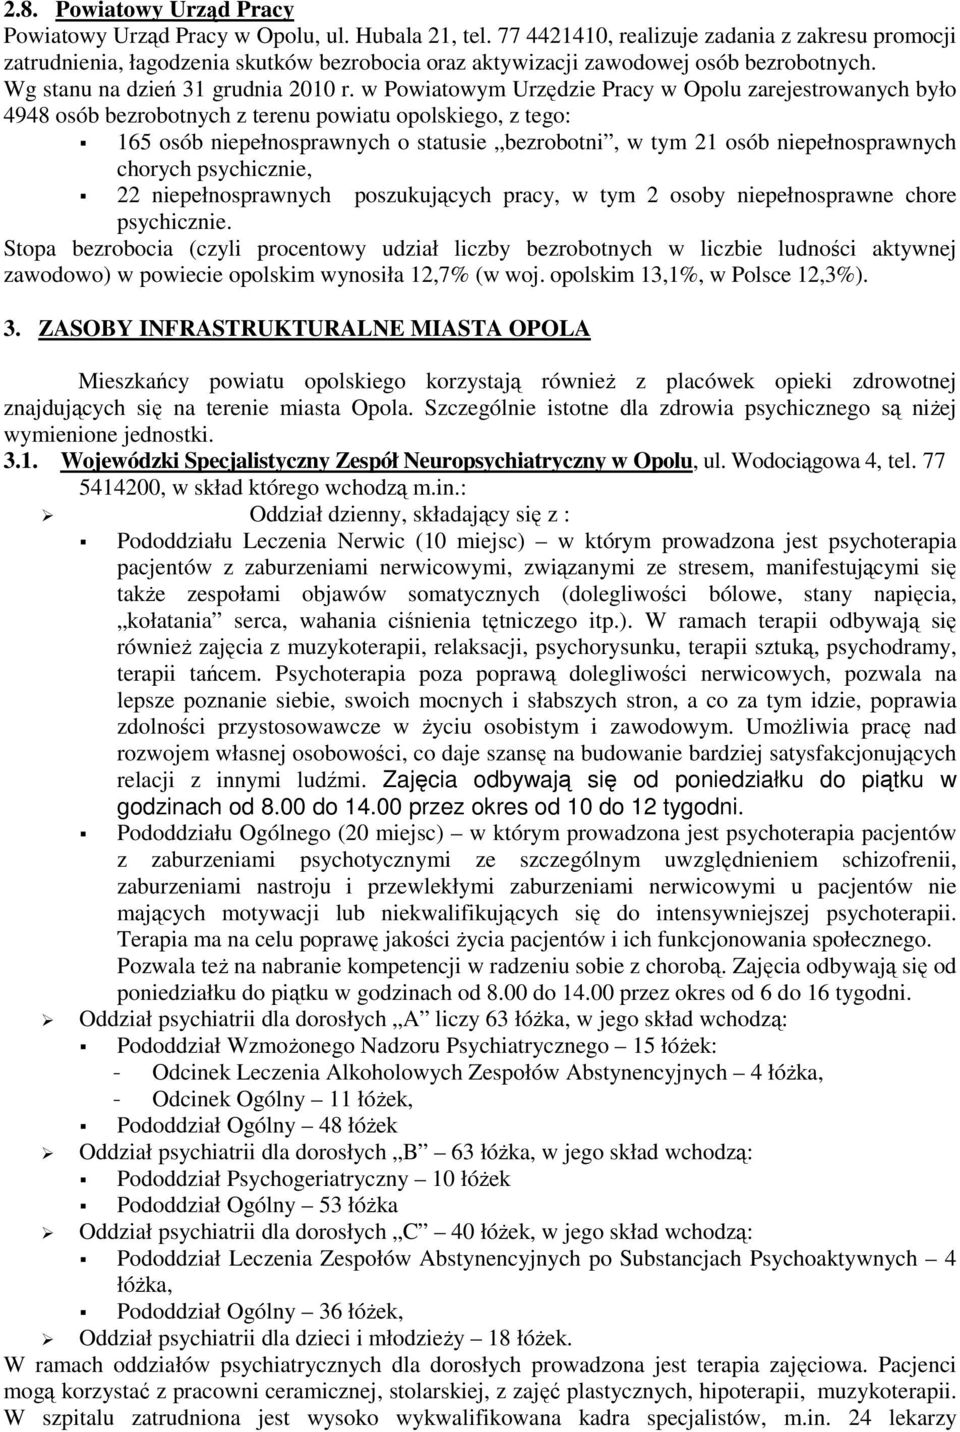 w Powiatowym Urzędzie Pracy w Opolu zarejestrowanych było 4948 osób bezrobotnych z terenu powiatu opolskiego, z tego: 165 osób niepełnosprawnych o statusie bezrobotni, w tym 21 osób niepełnosprawnych